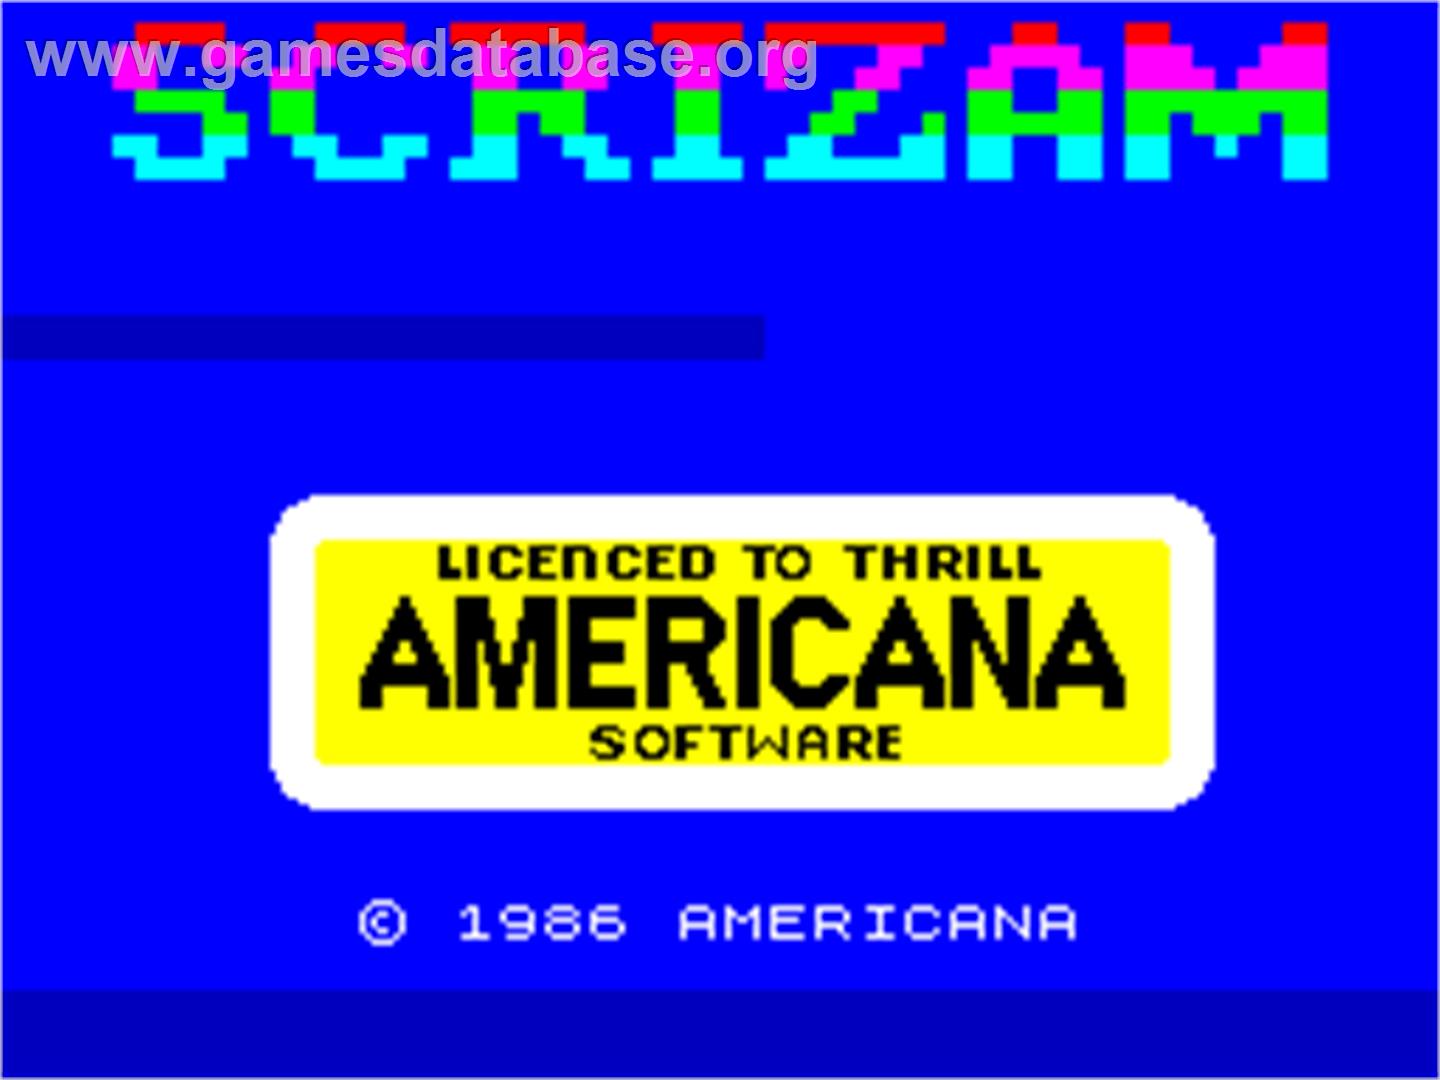 Sgrizam - Sinclair ZX Spectrum - Artwork - Title Screen